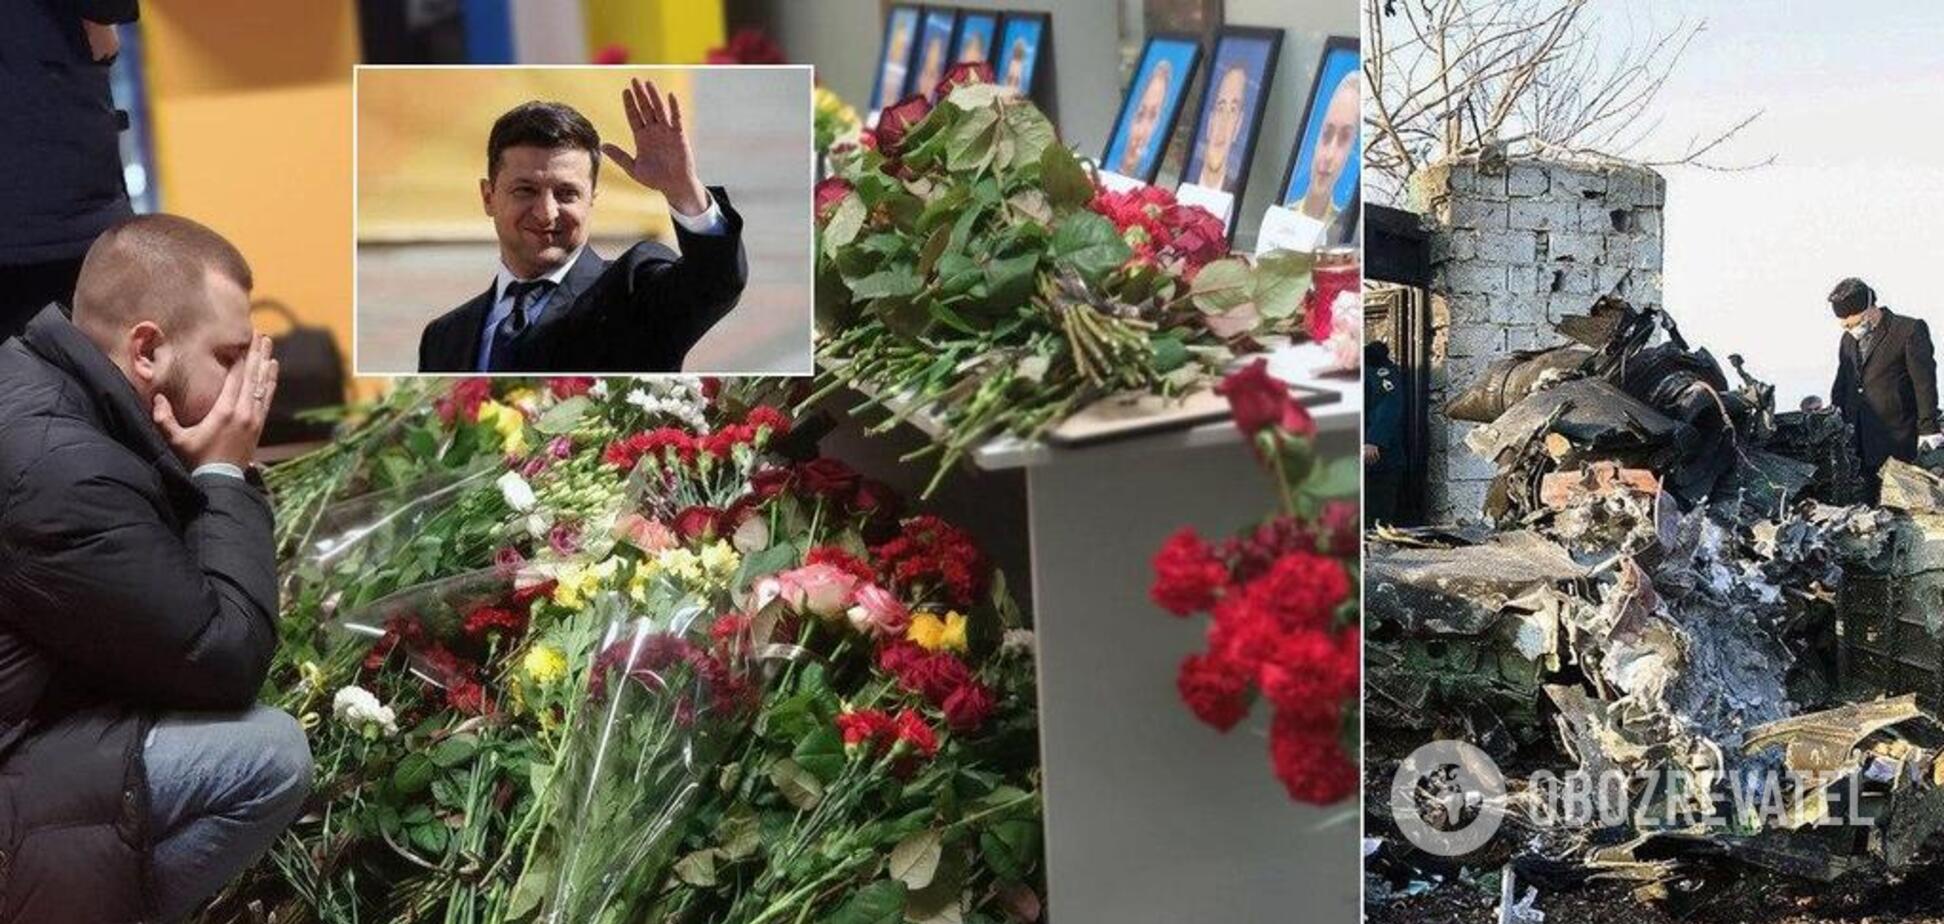 Молчал 12 часов: Зеленский разгневал украинцев игнором ракетной версии авиакатастрофы самолета МАУ